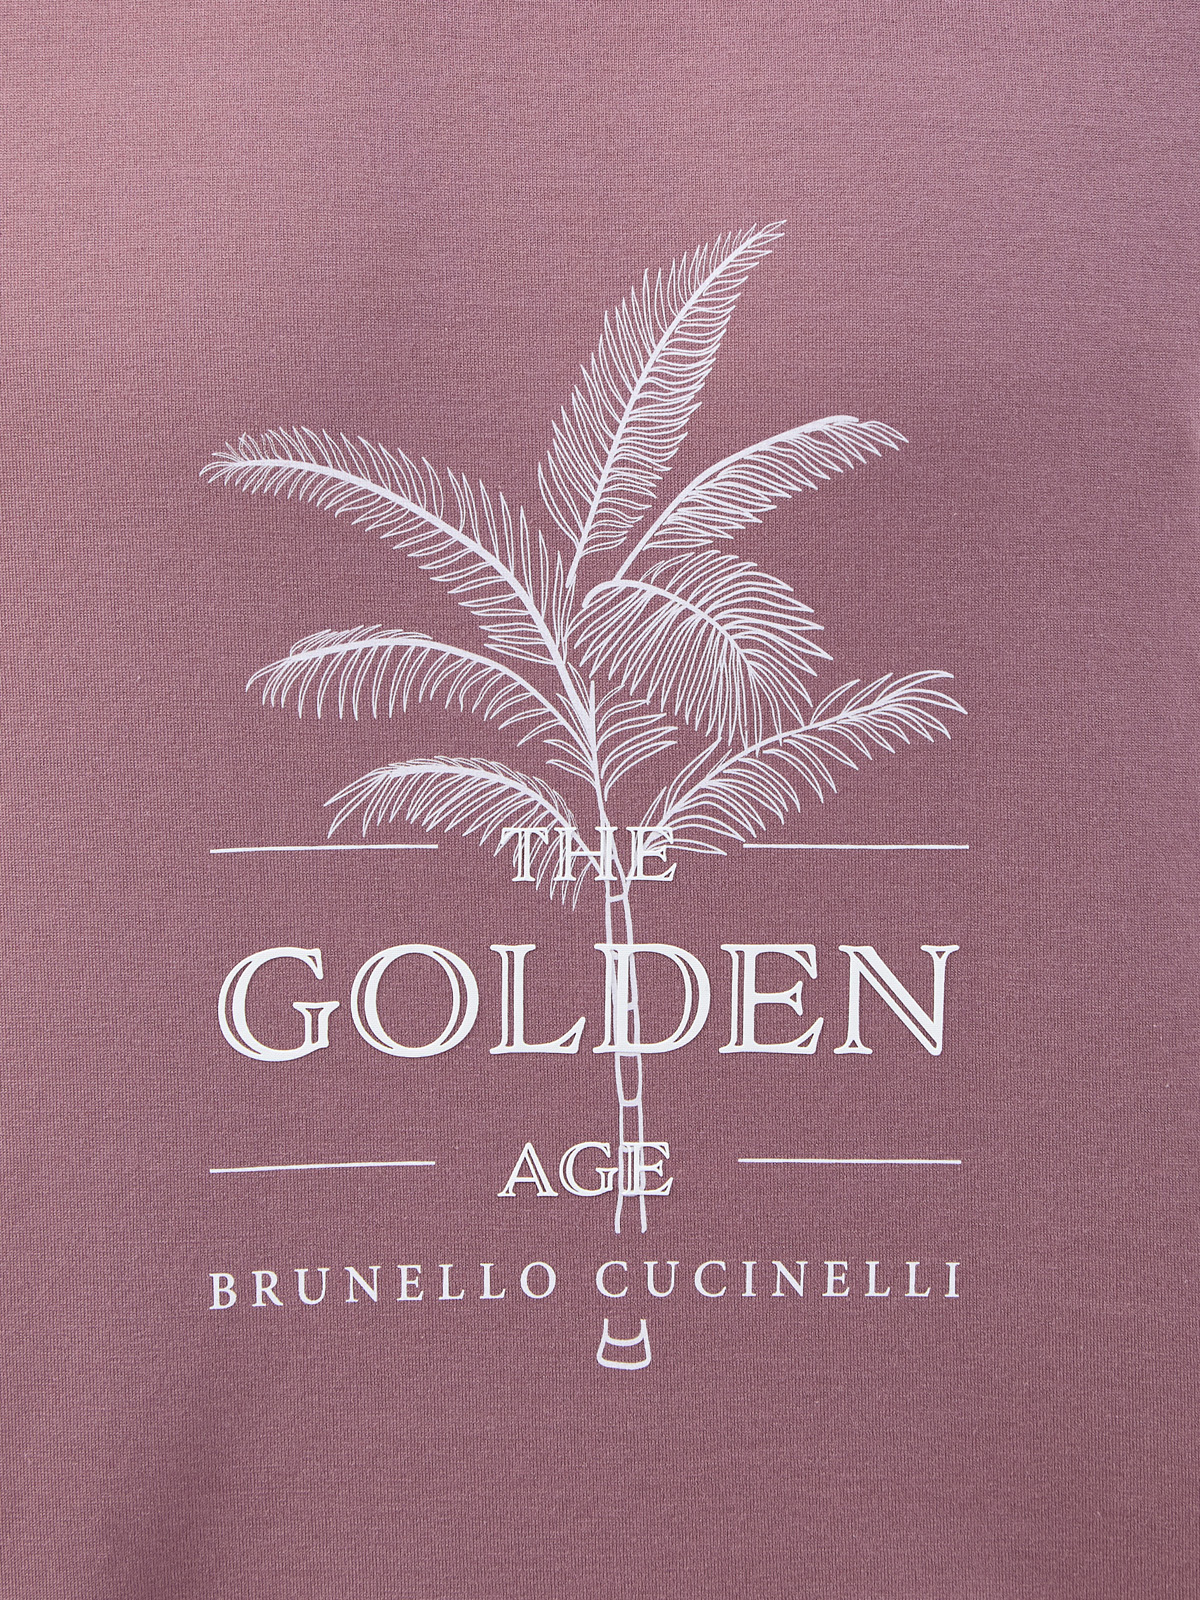 Футболка из джерси с сезонным принтом The Golden Age BRUNELLO CUCINELLI, цвет бордовый, размер 52;56;50 - фото 5